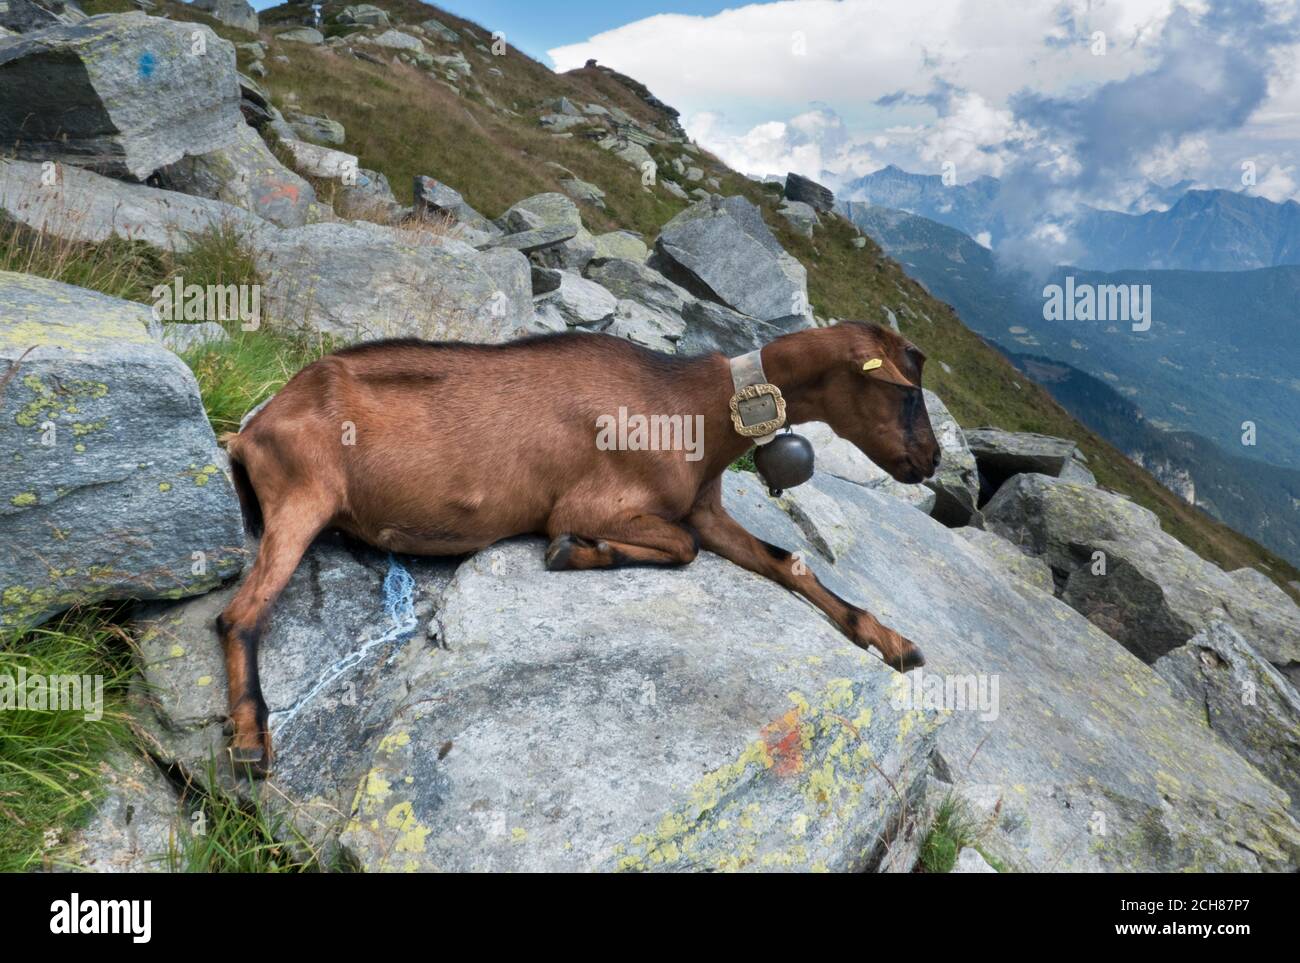 Braune Ziege mit einer Glocke, die auf einem Felsen ruht, Milch tropft aus ihrem Euter Stockfoto